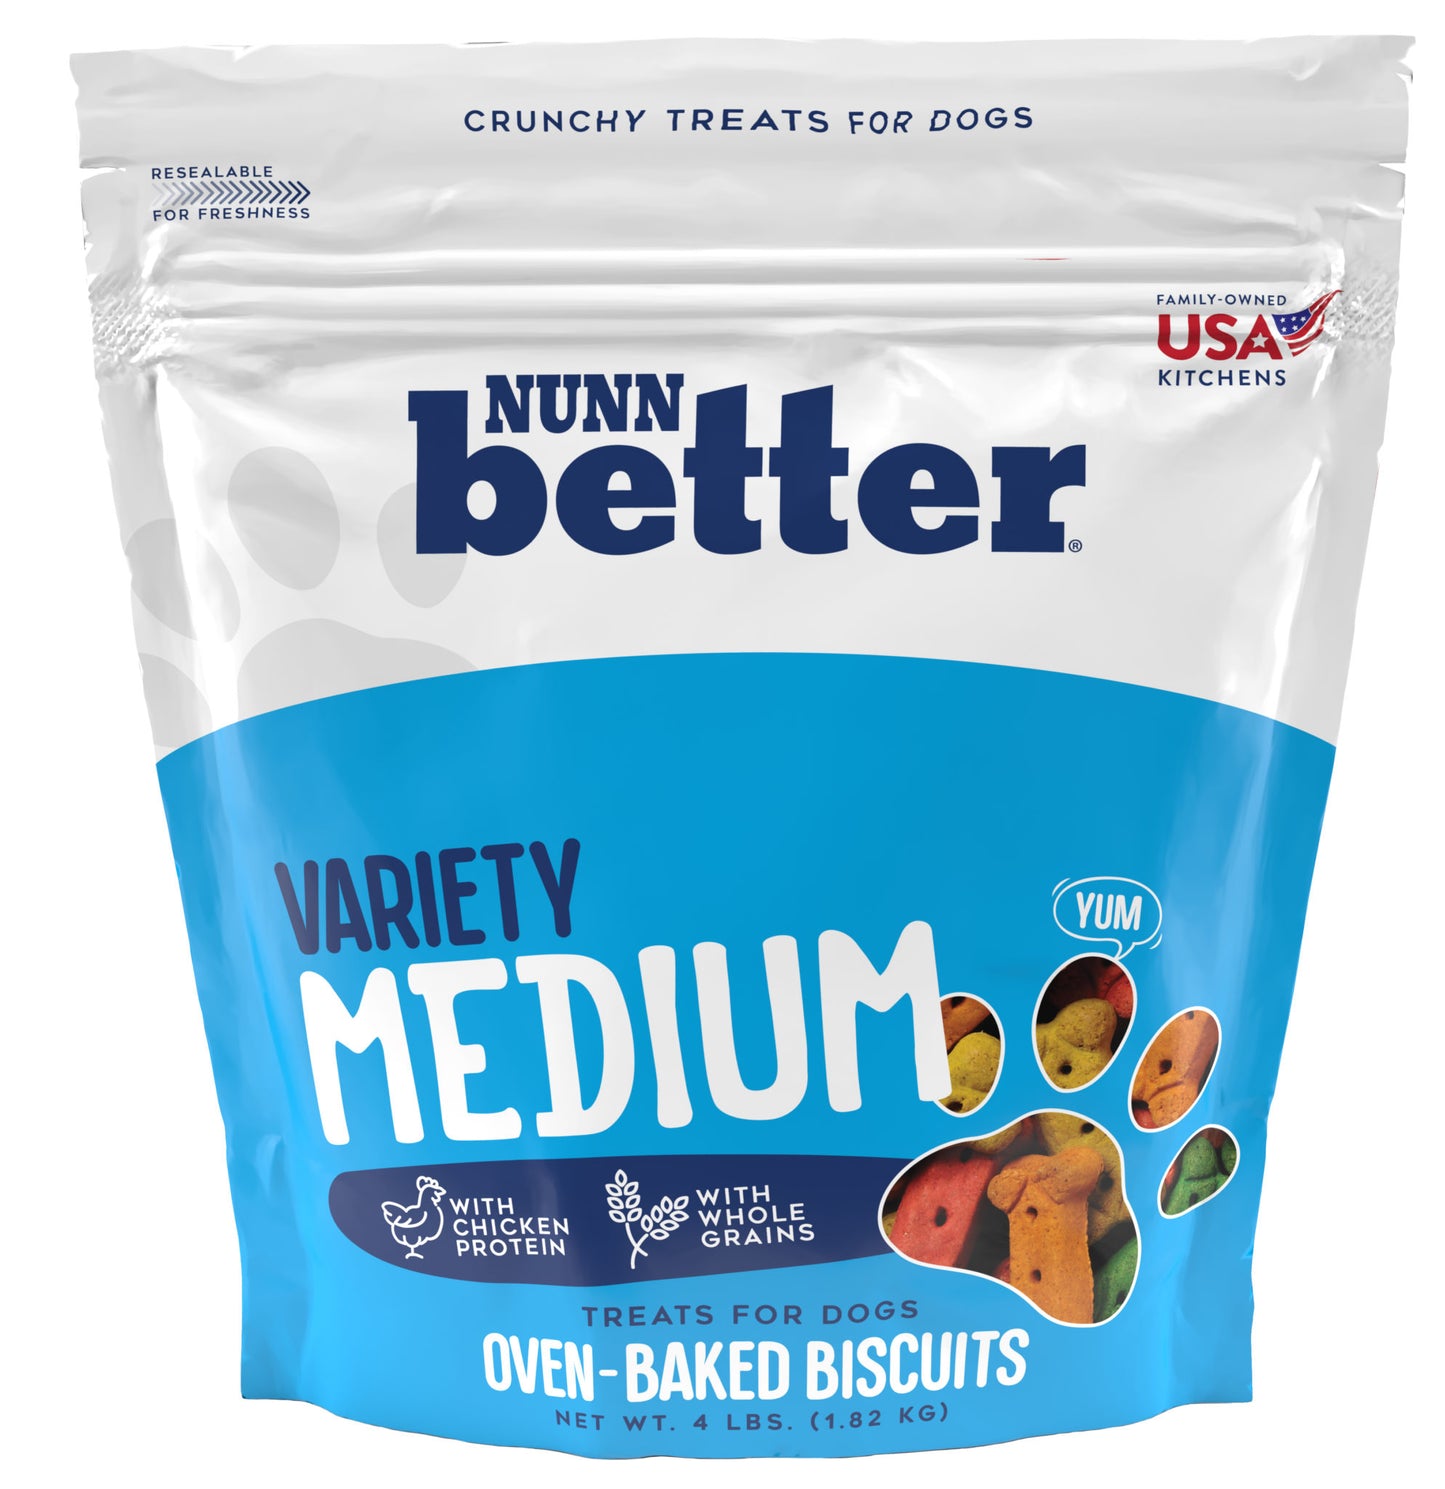 Nunn Better Medium Variety Biscuits